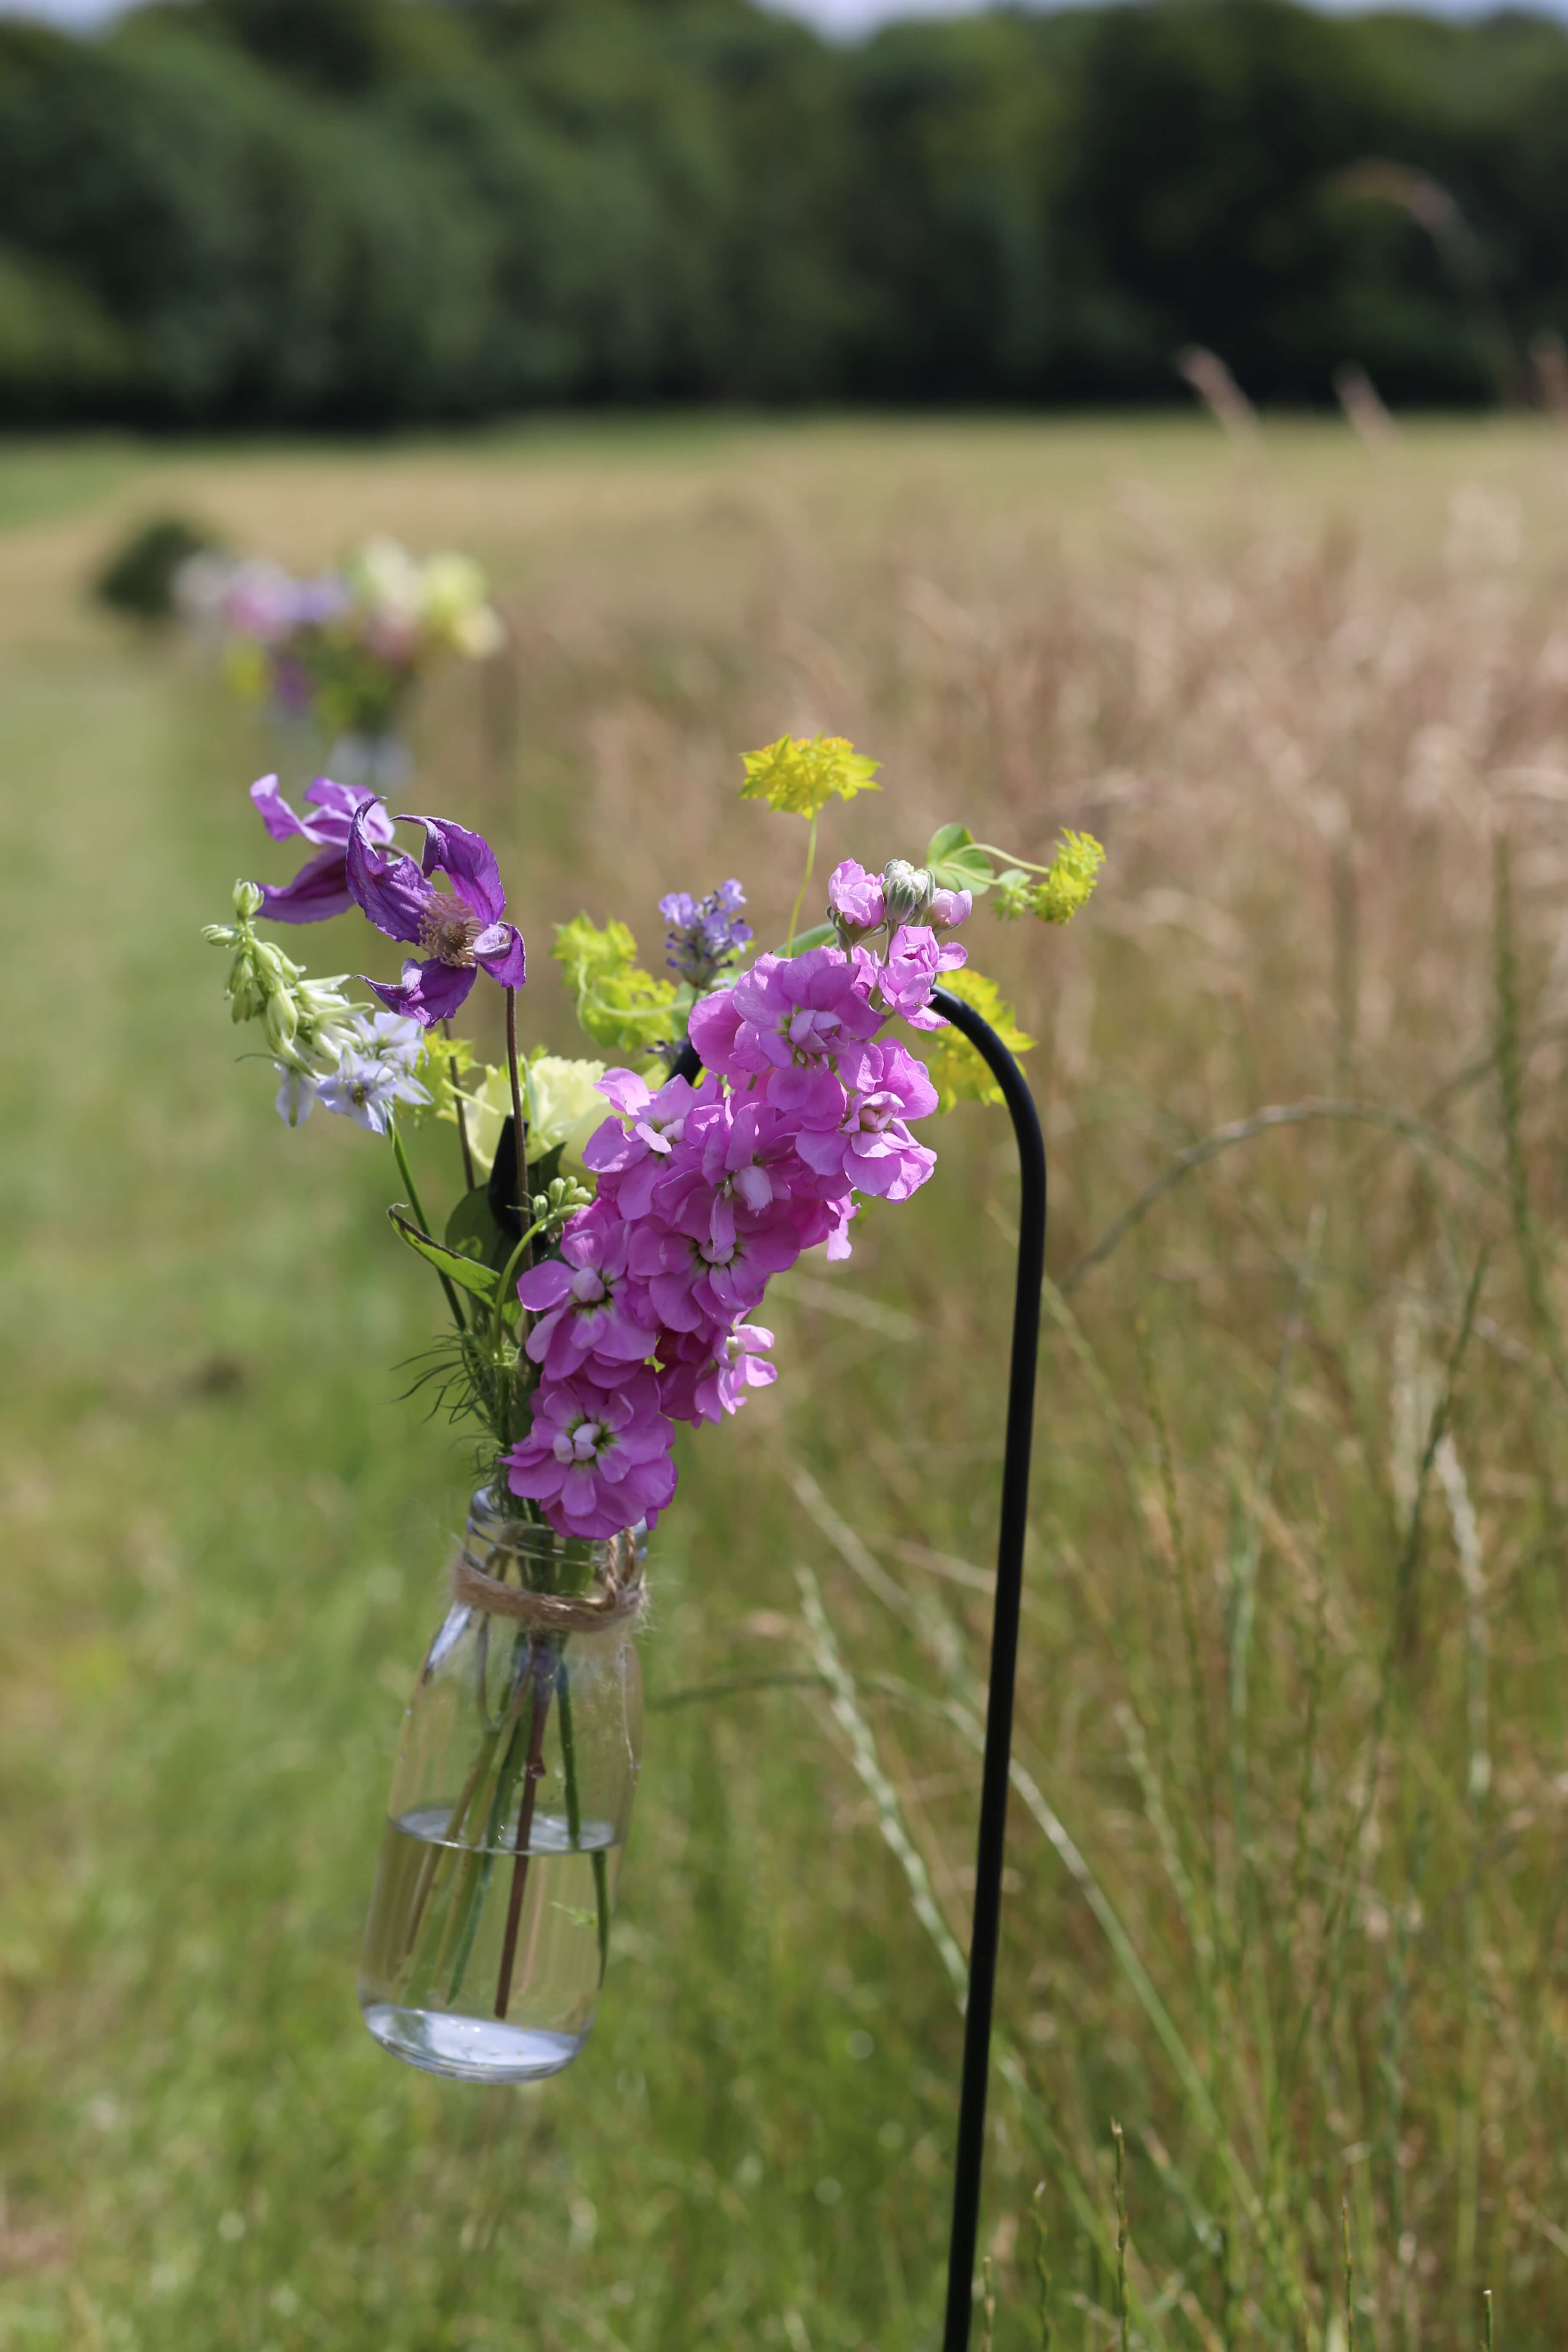 meadow style flowers in a glass bottle hanging from a shepherd hook